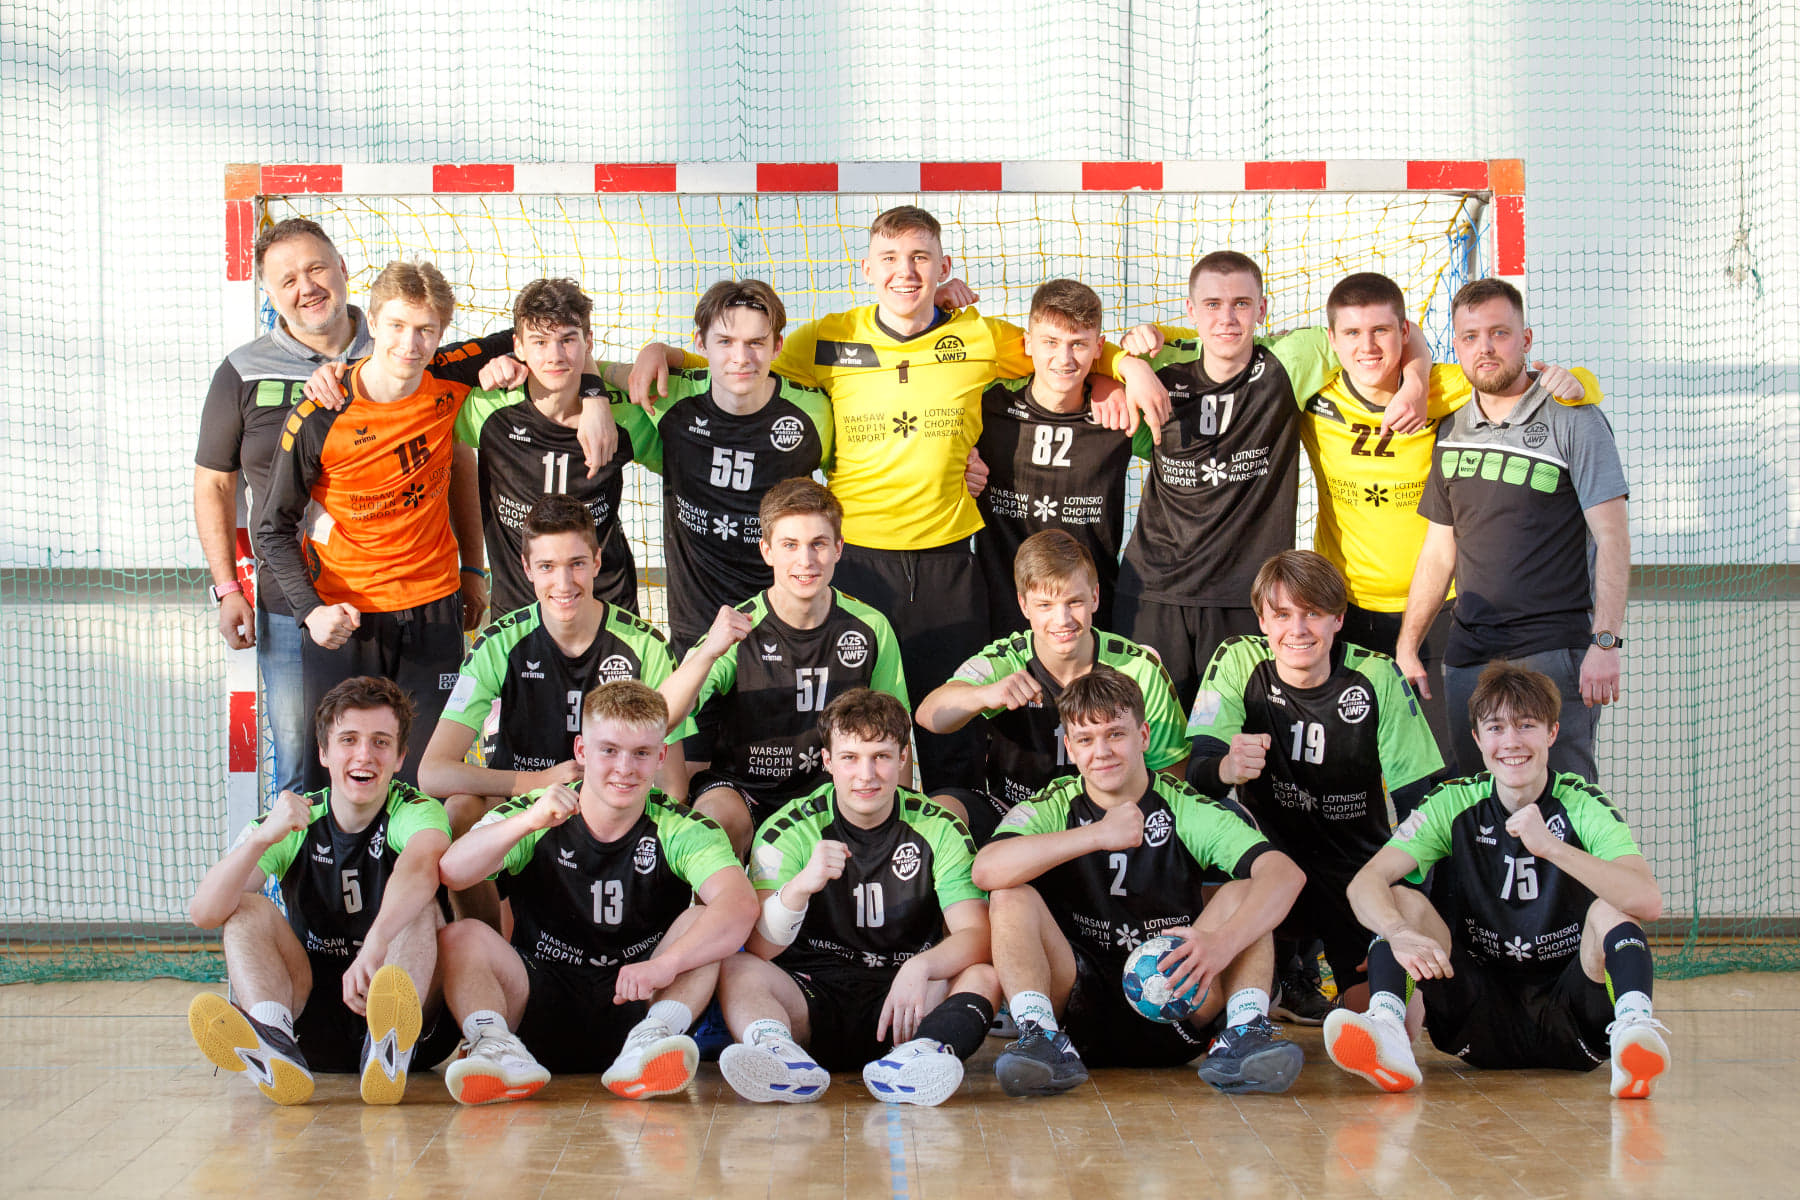 Mistrzostwa Polski Juniorów Młodszych Sezon 2020-2021 – WYNIKI 1-16 Finału